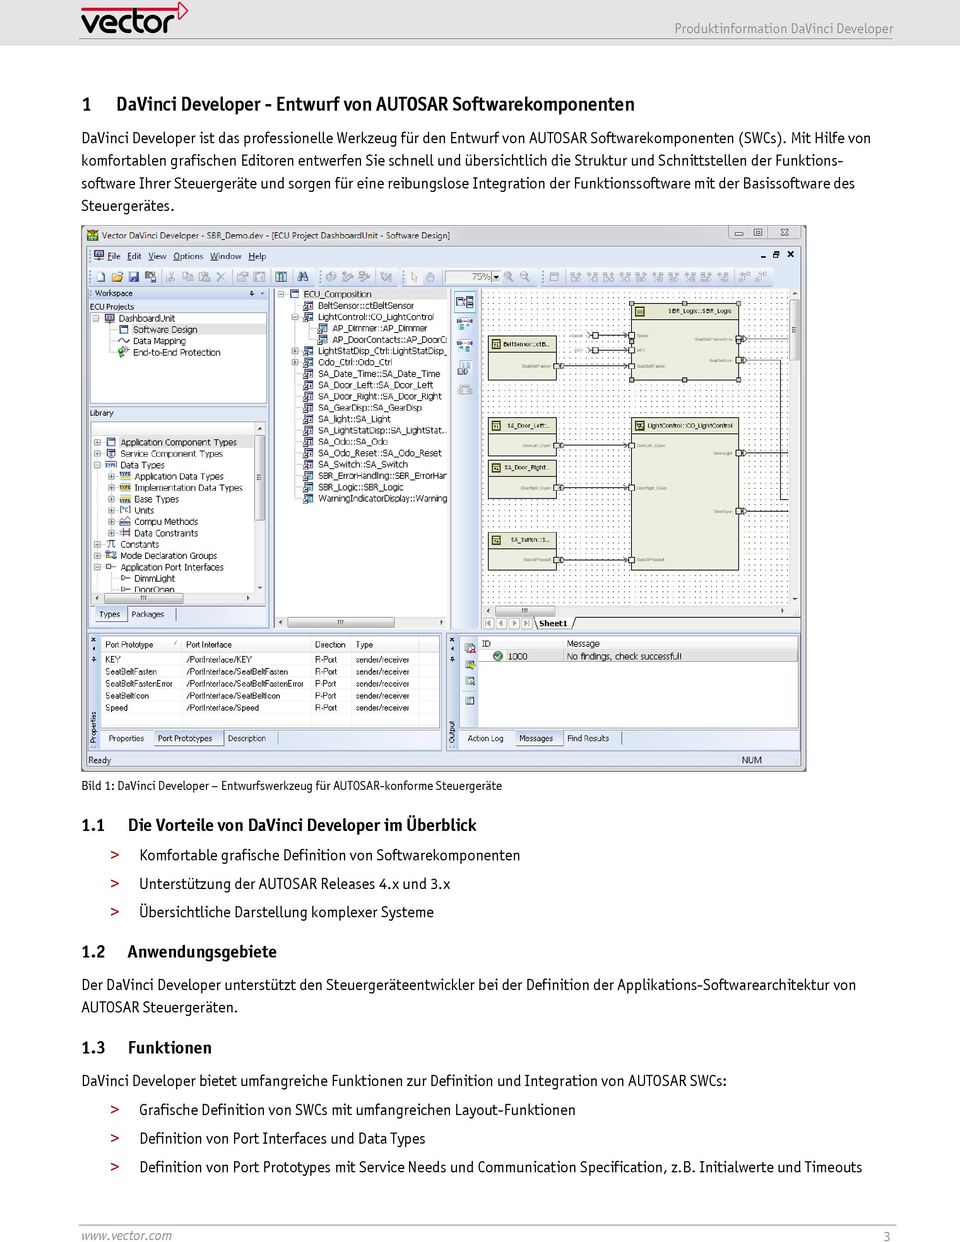 Integration der Funktionssoftware mit der Basissoftware des Steuergerätes. Bild 1: DaVinci Developer Entwurfswerkzeug für AUTOSAR-konforme Steuergeräte 1.